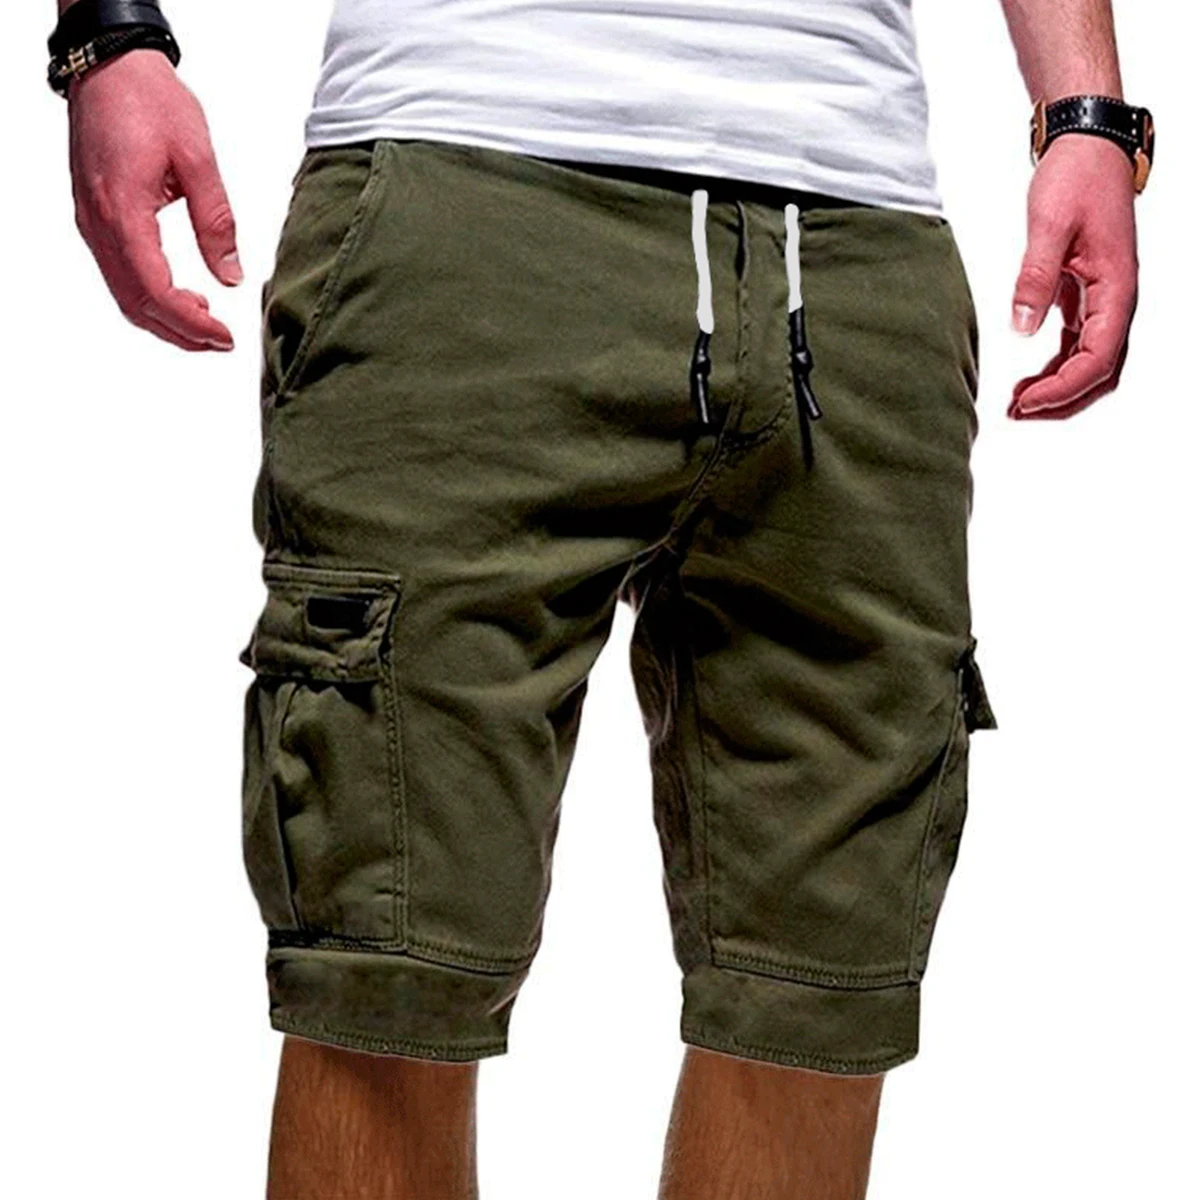 SHUJIN,, мужские шорты ДЛЯ ФИТНЕССА, повседневные брендовые штаны для тренировок, качественные шорты, мужские спортивные шорты с несколькими карманами